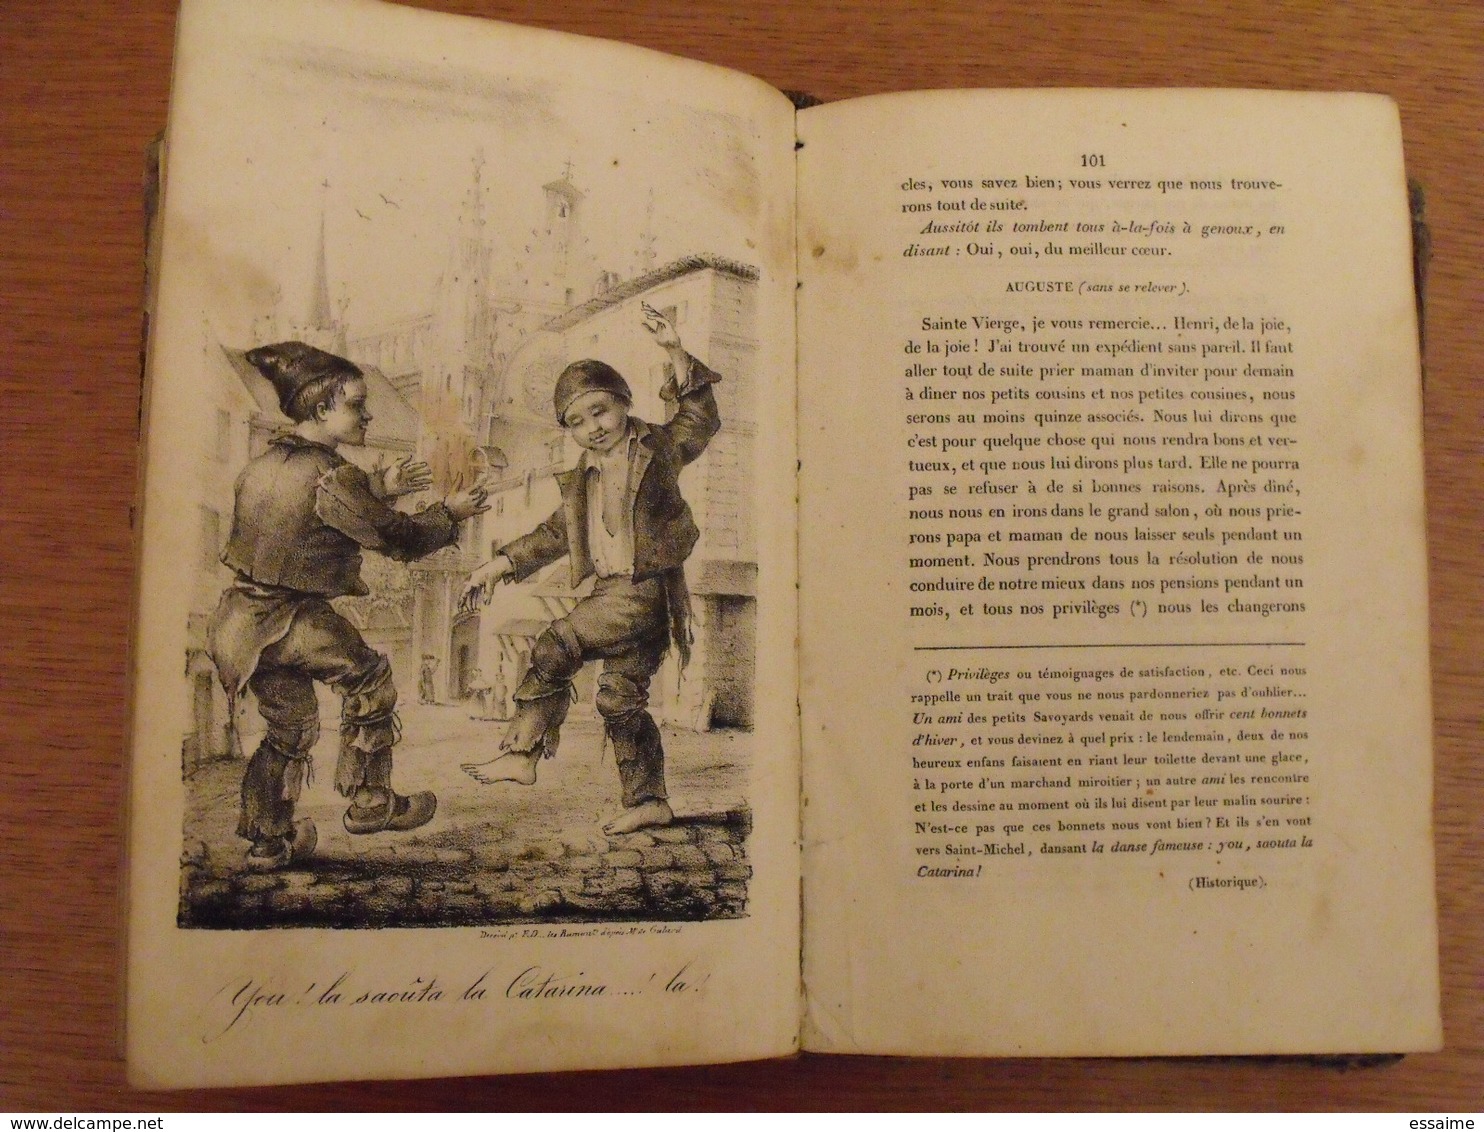 Album Savoyard dédié aux enfans des Savoyards de Bordeaux par Ad. D.. 1833 + histoire d'une marmotte 1834